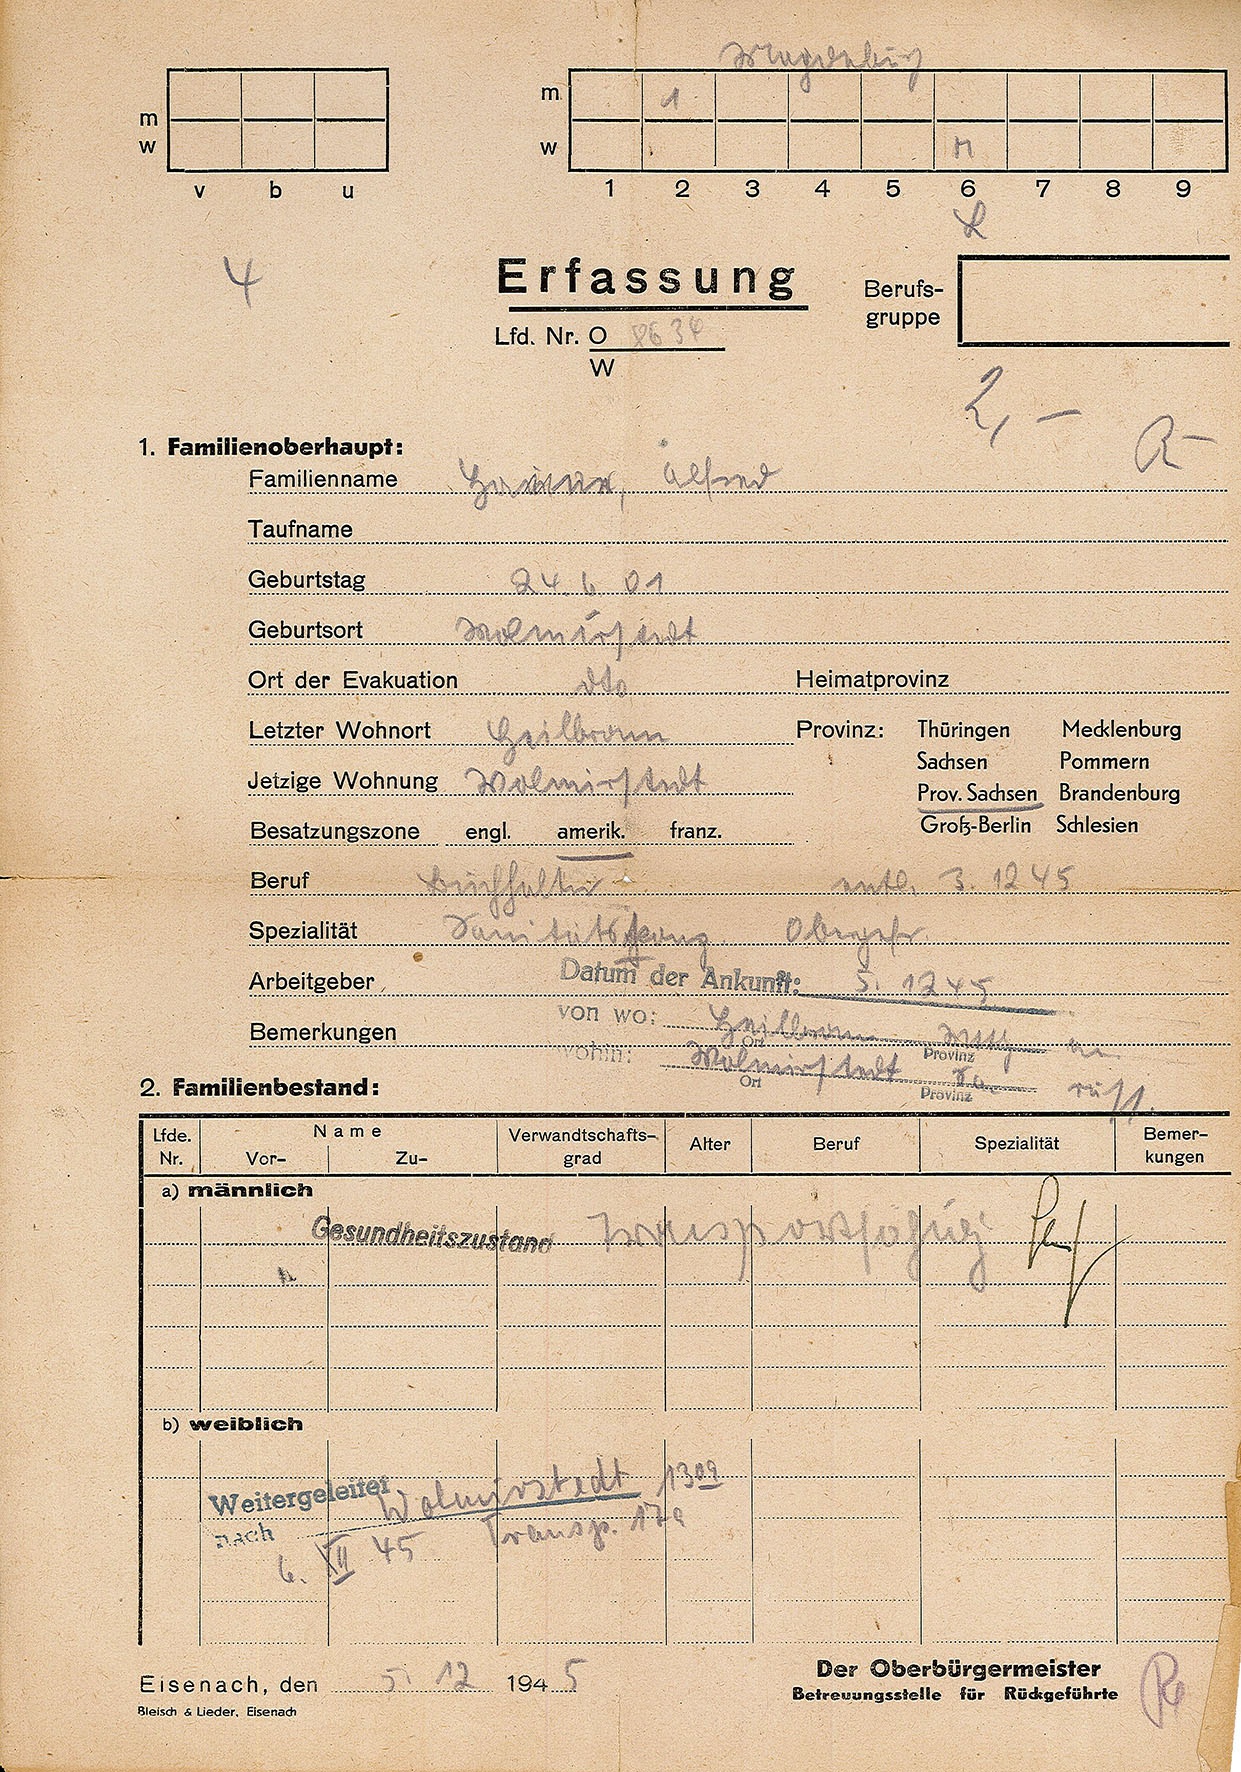 Personalbogen Betreuungsstelle für Rückgeführte von Alfred Hanne, 5. Dezember 1945 (Museum Wolmirstedt RR-F)